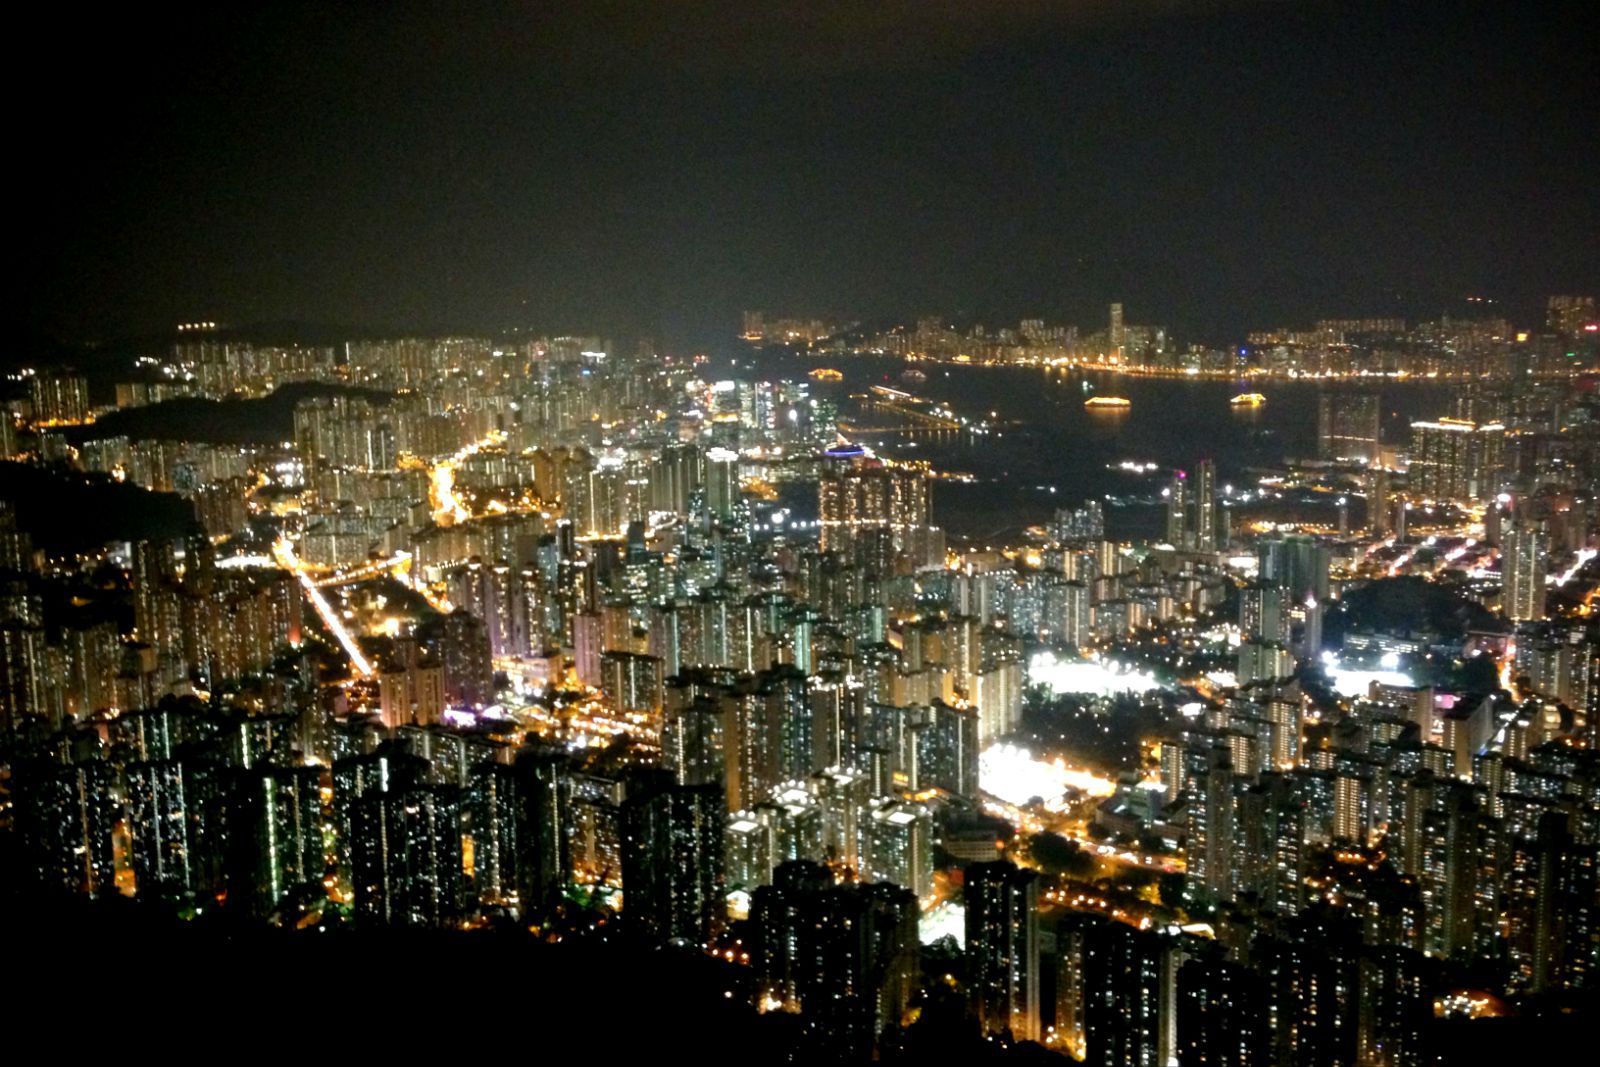 唯有此刻,我才领悟到狮子山下,万家灯火,九龙人家. 狮子山,香港